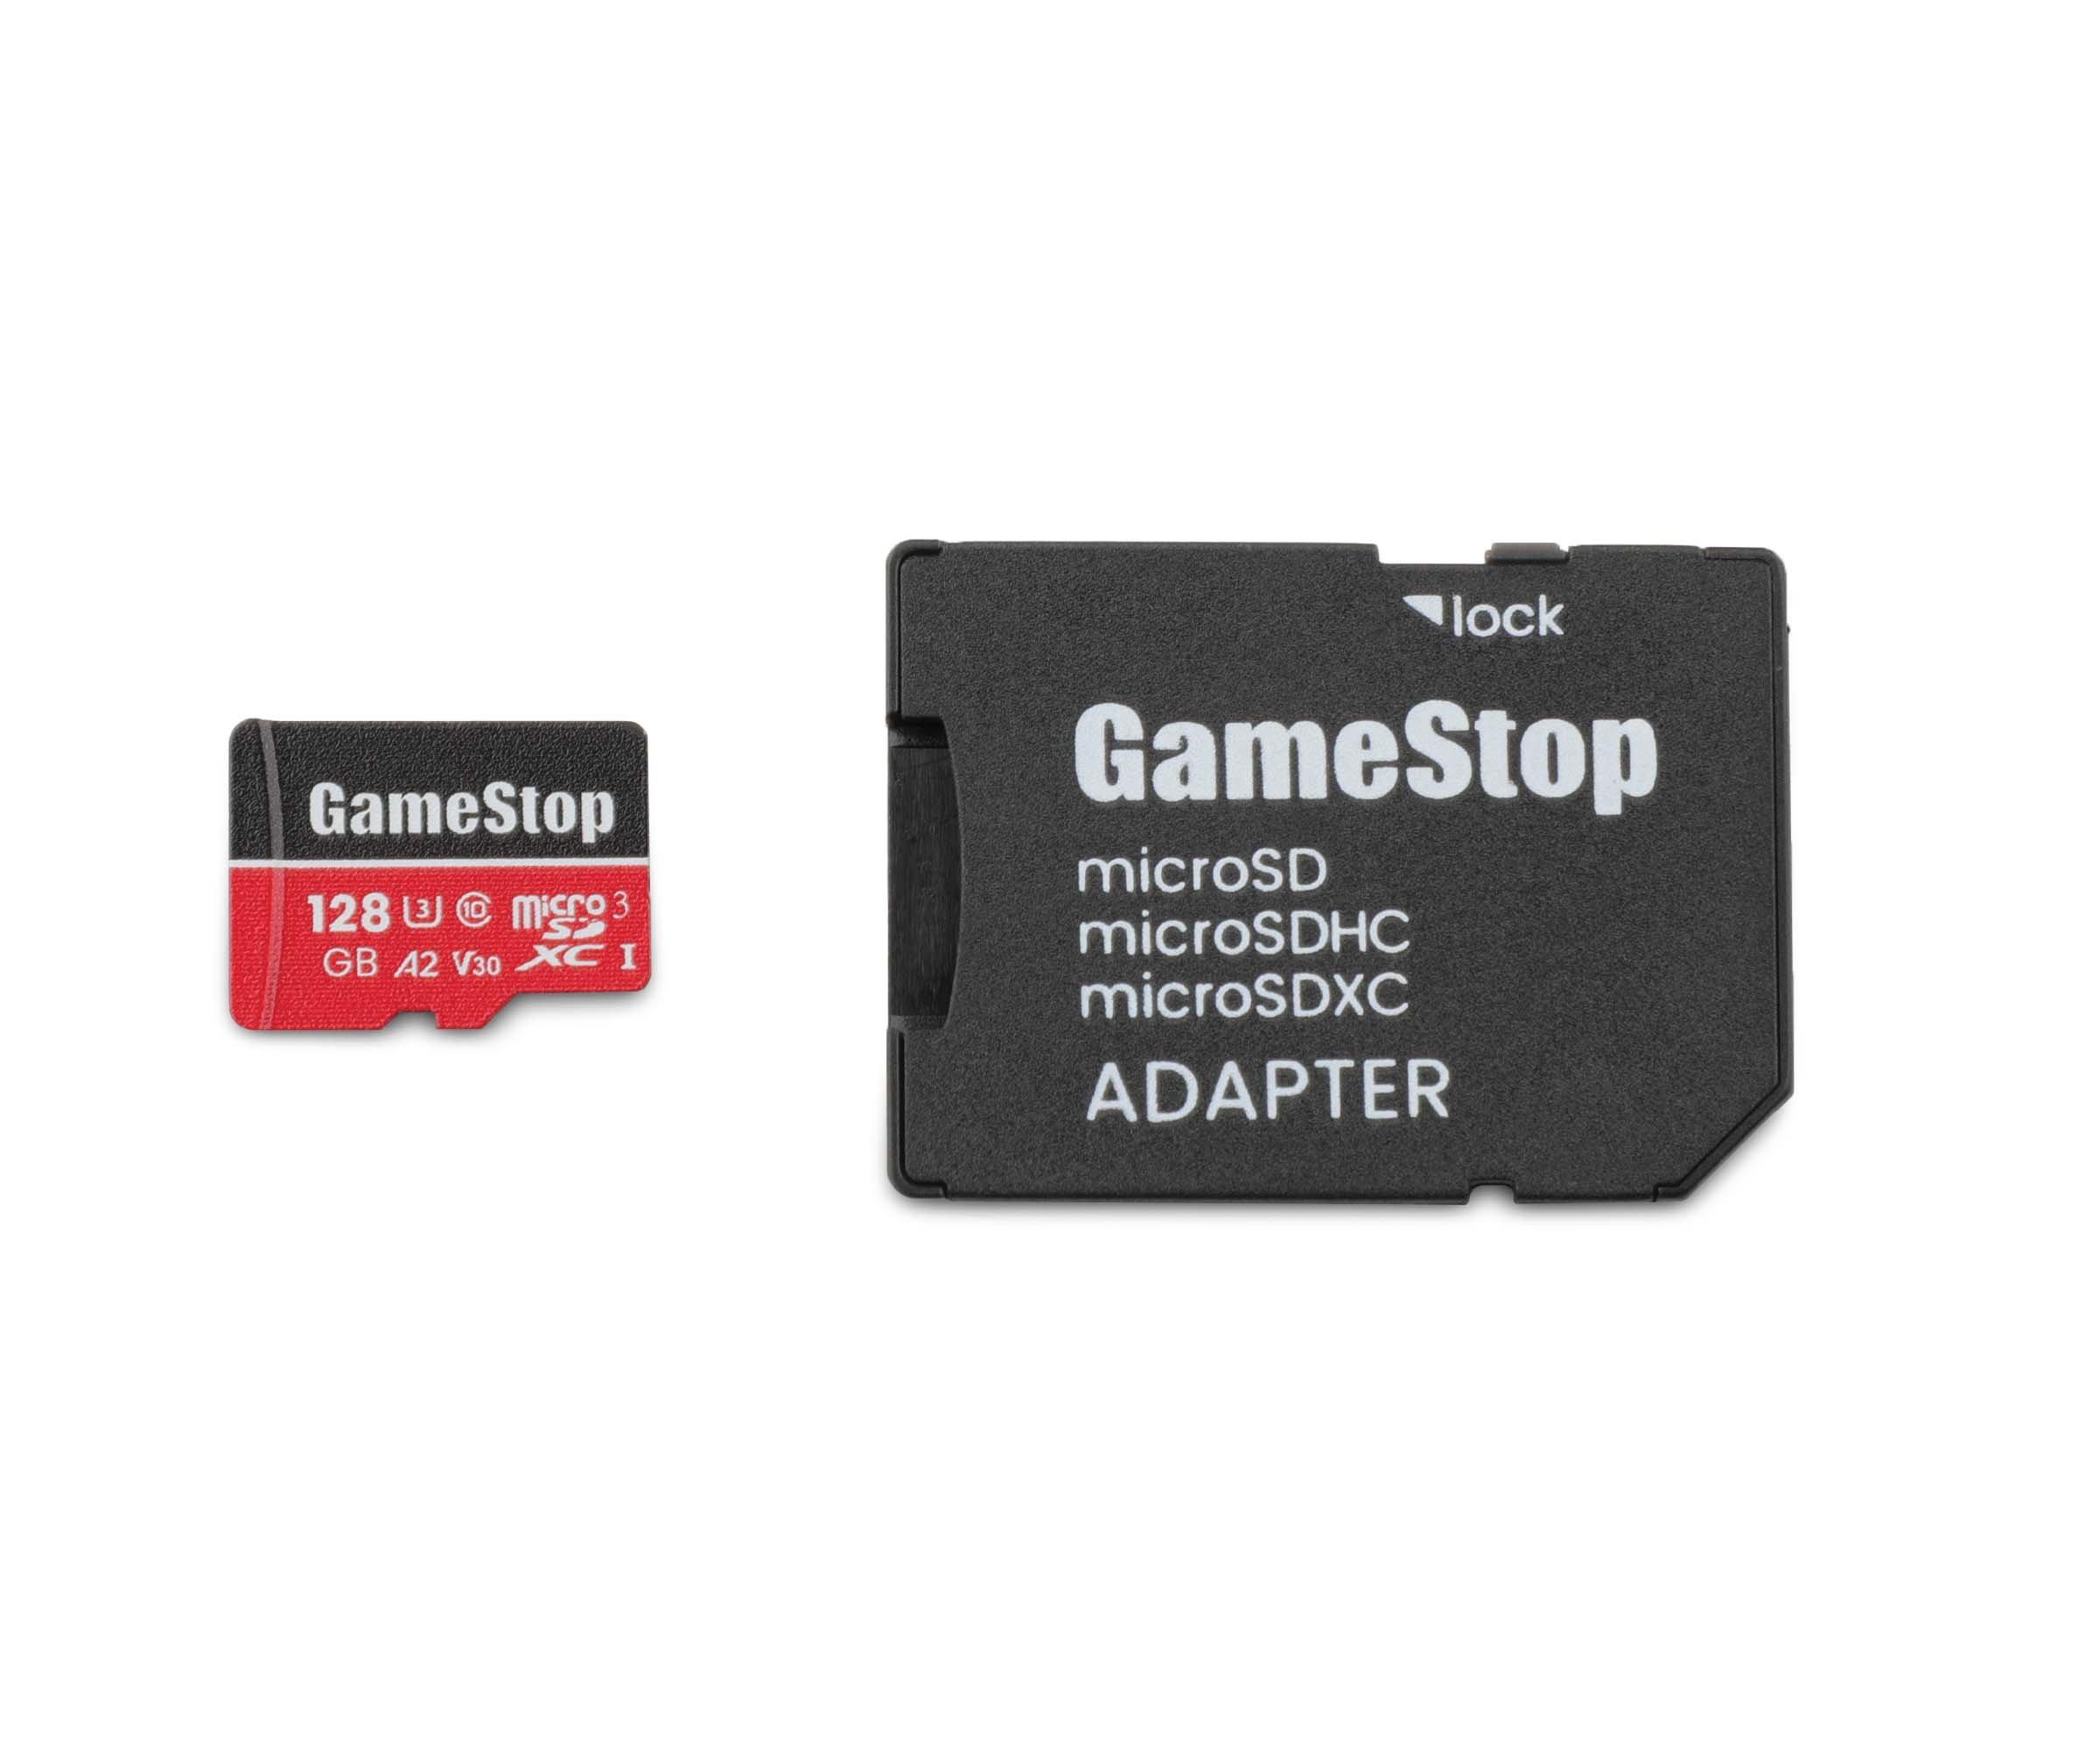 Kilauea Mountain draad sleuf GameStop 128GB U3 Micro SD Card with Adapter | GameStop